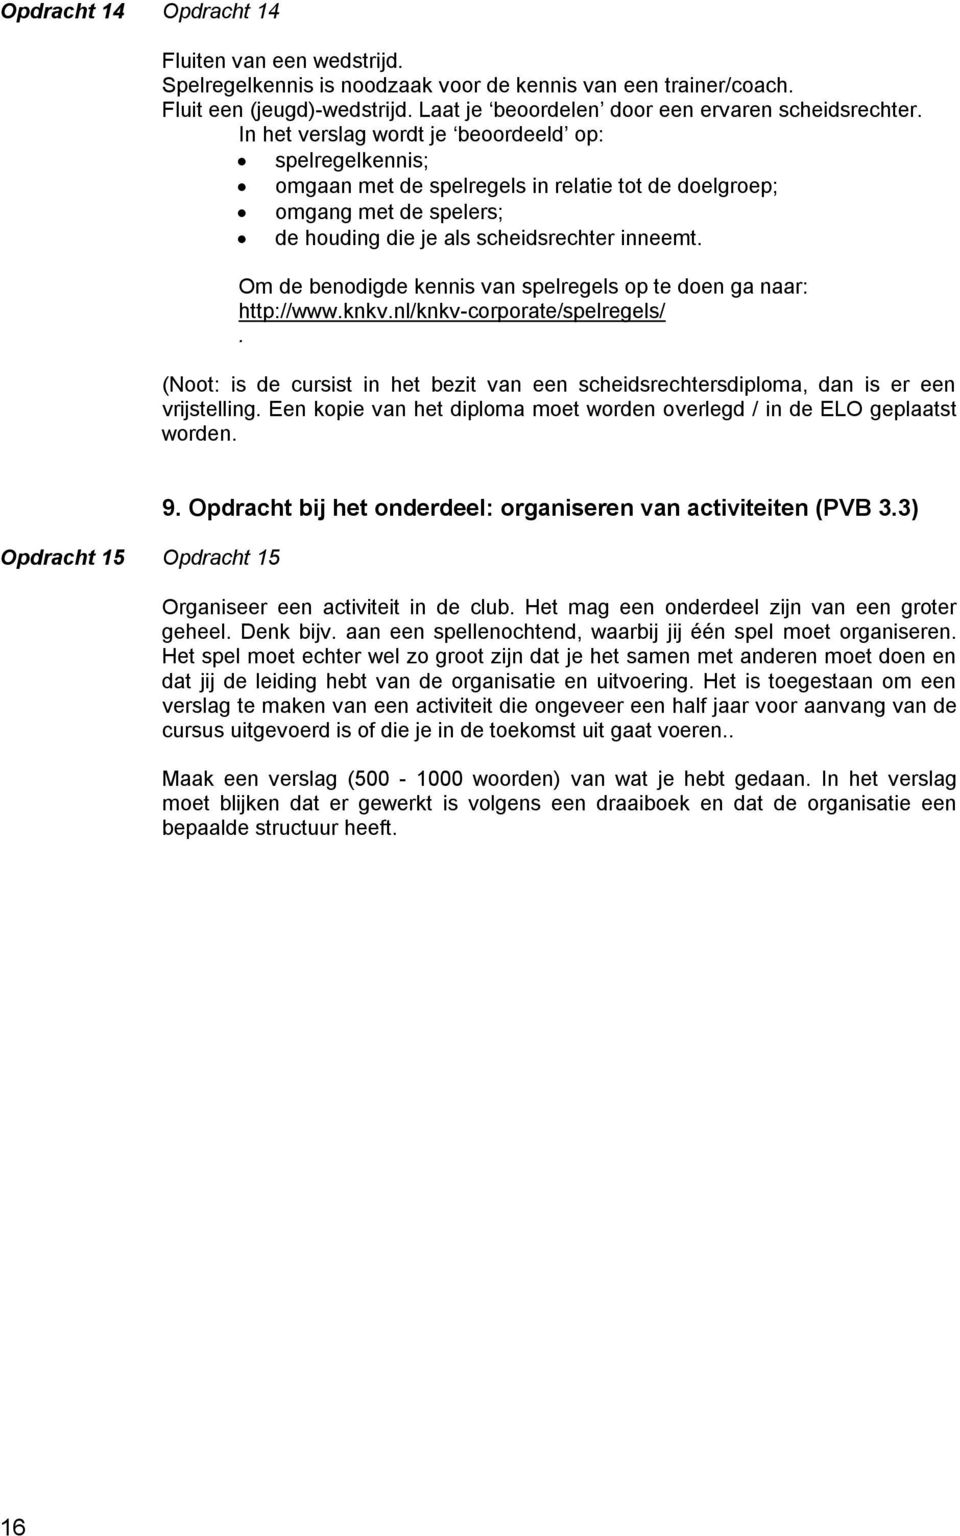 Om de benodigde kennis van spelregels op te doen ga naar: http://www.knkv.nl/knkv-corporate/spelregels/. (Noot: is de cursist in het bezit van een scheidsrechtersdiploma, dan is er een vrijstelling.